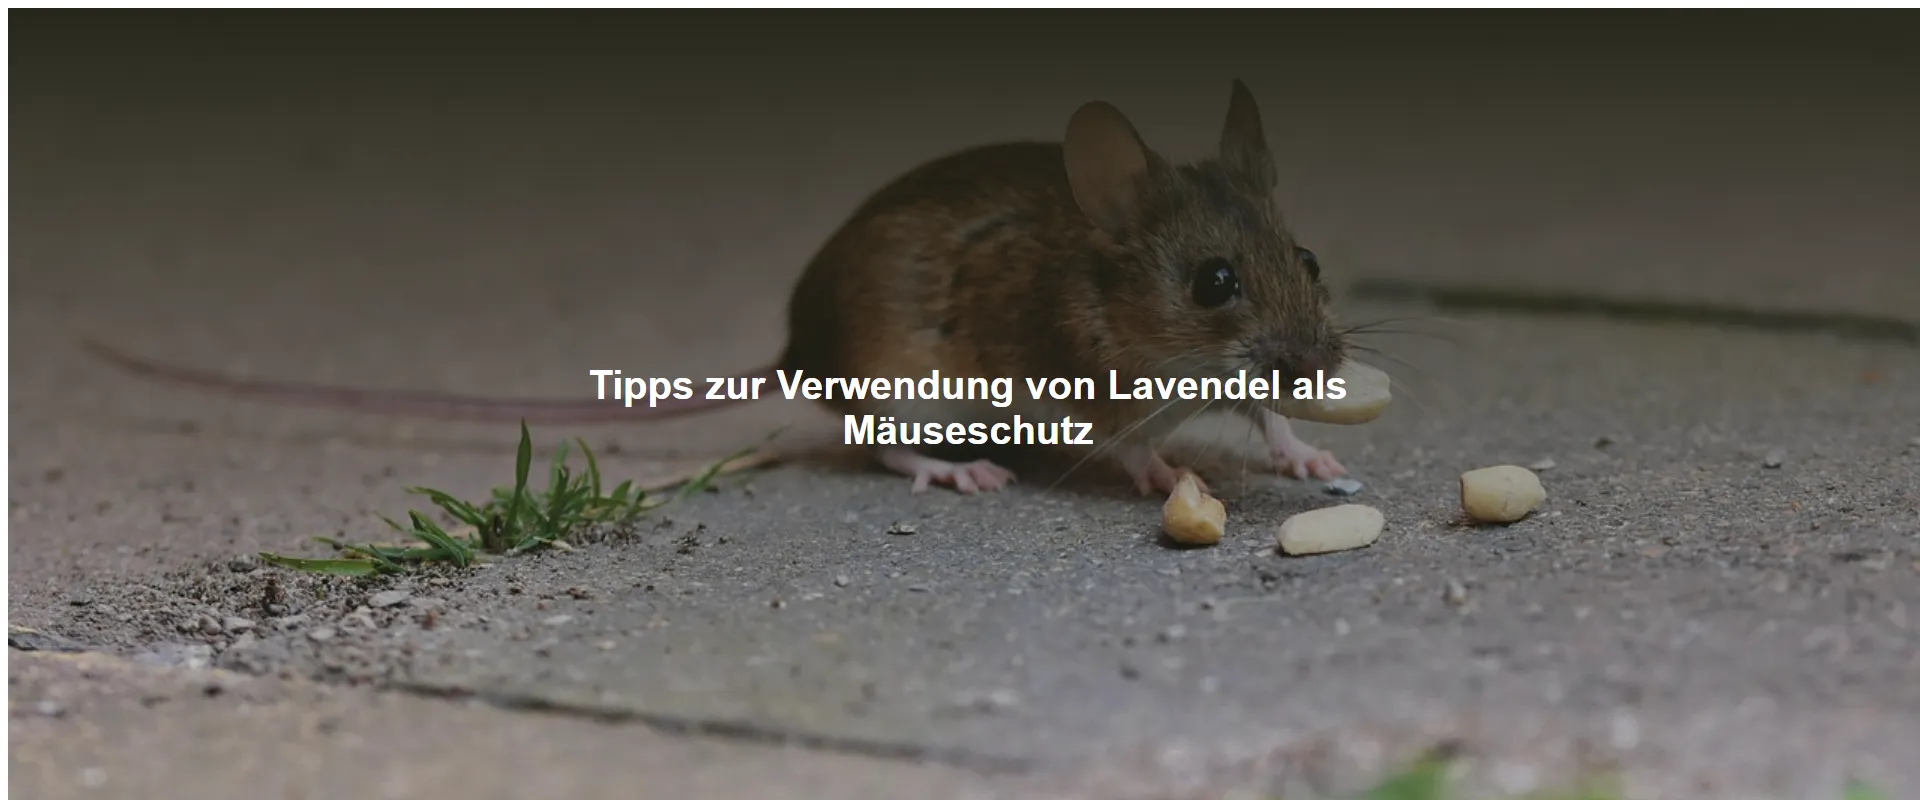 Tipps zur Verwendung von Lavendel als Mäuseschutz